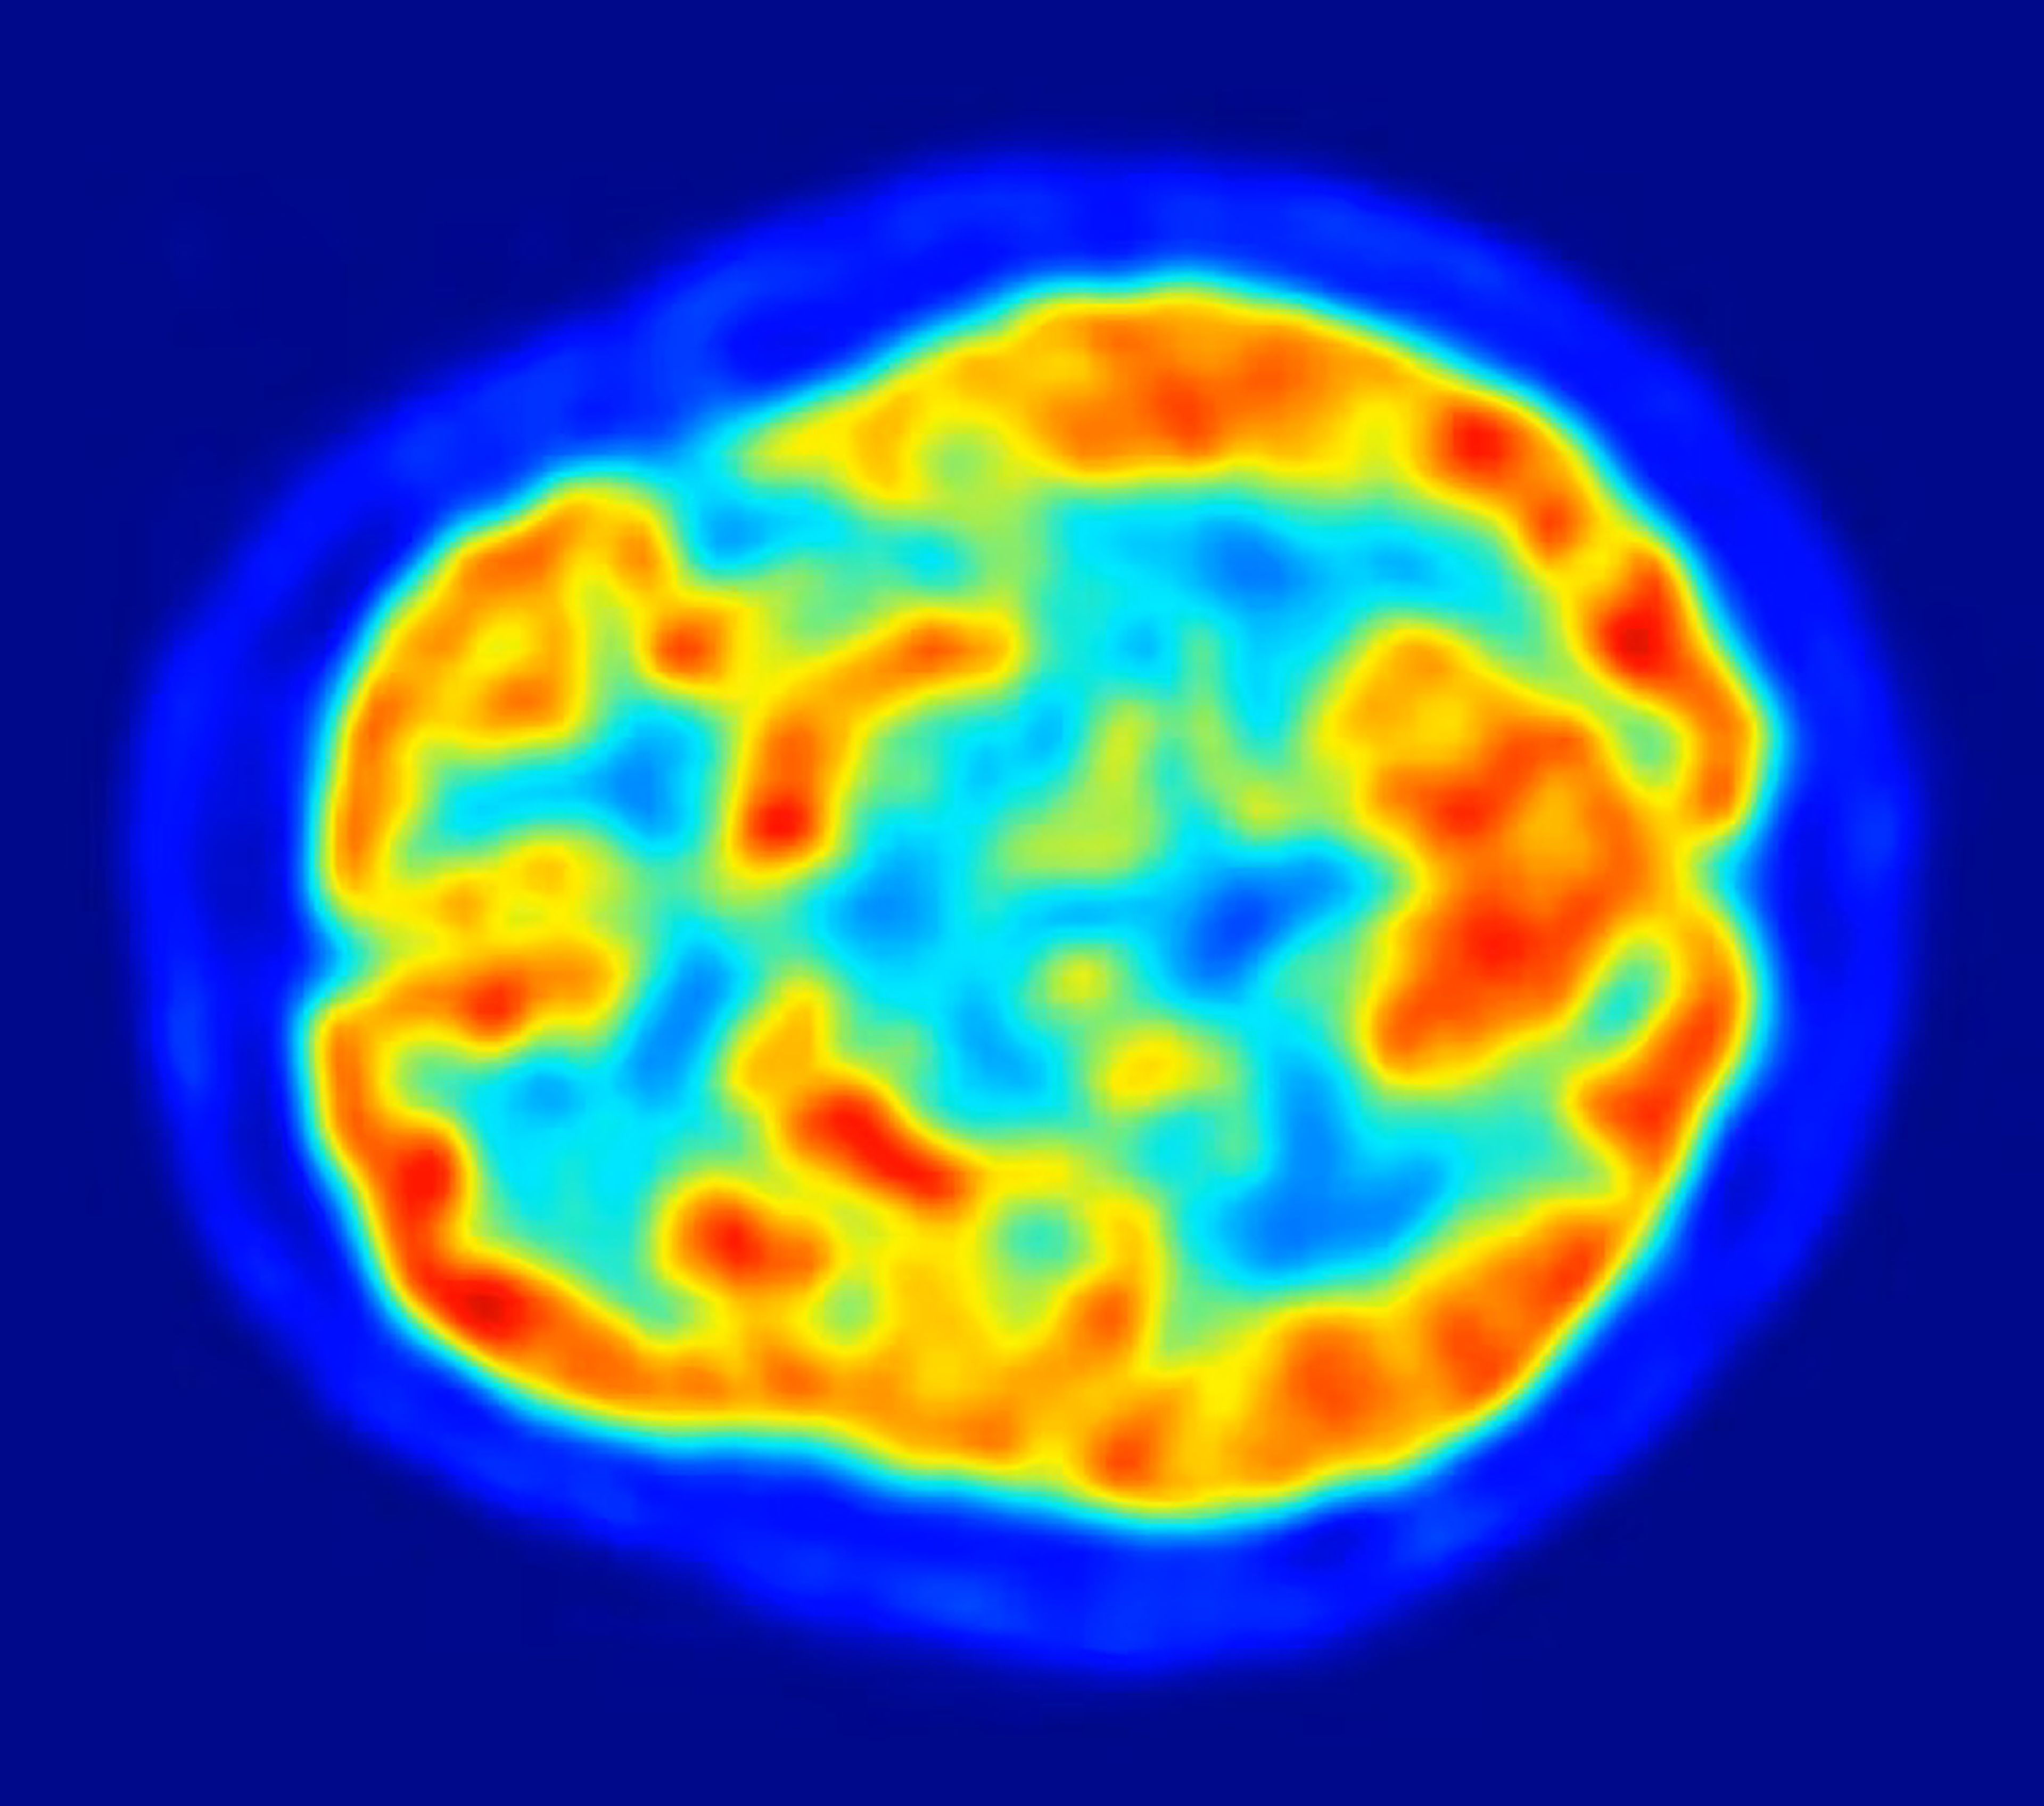 Una tomografía por emisión de positrones (PET) del cerebro humano puede revelar áreas con más actividad (en rojo).